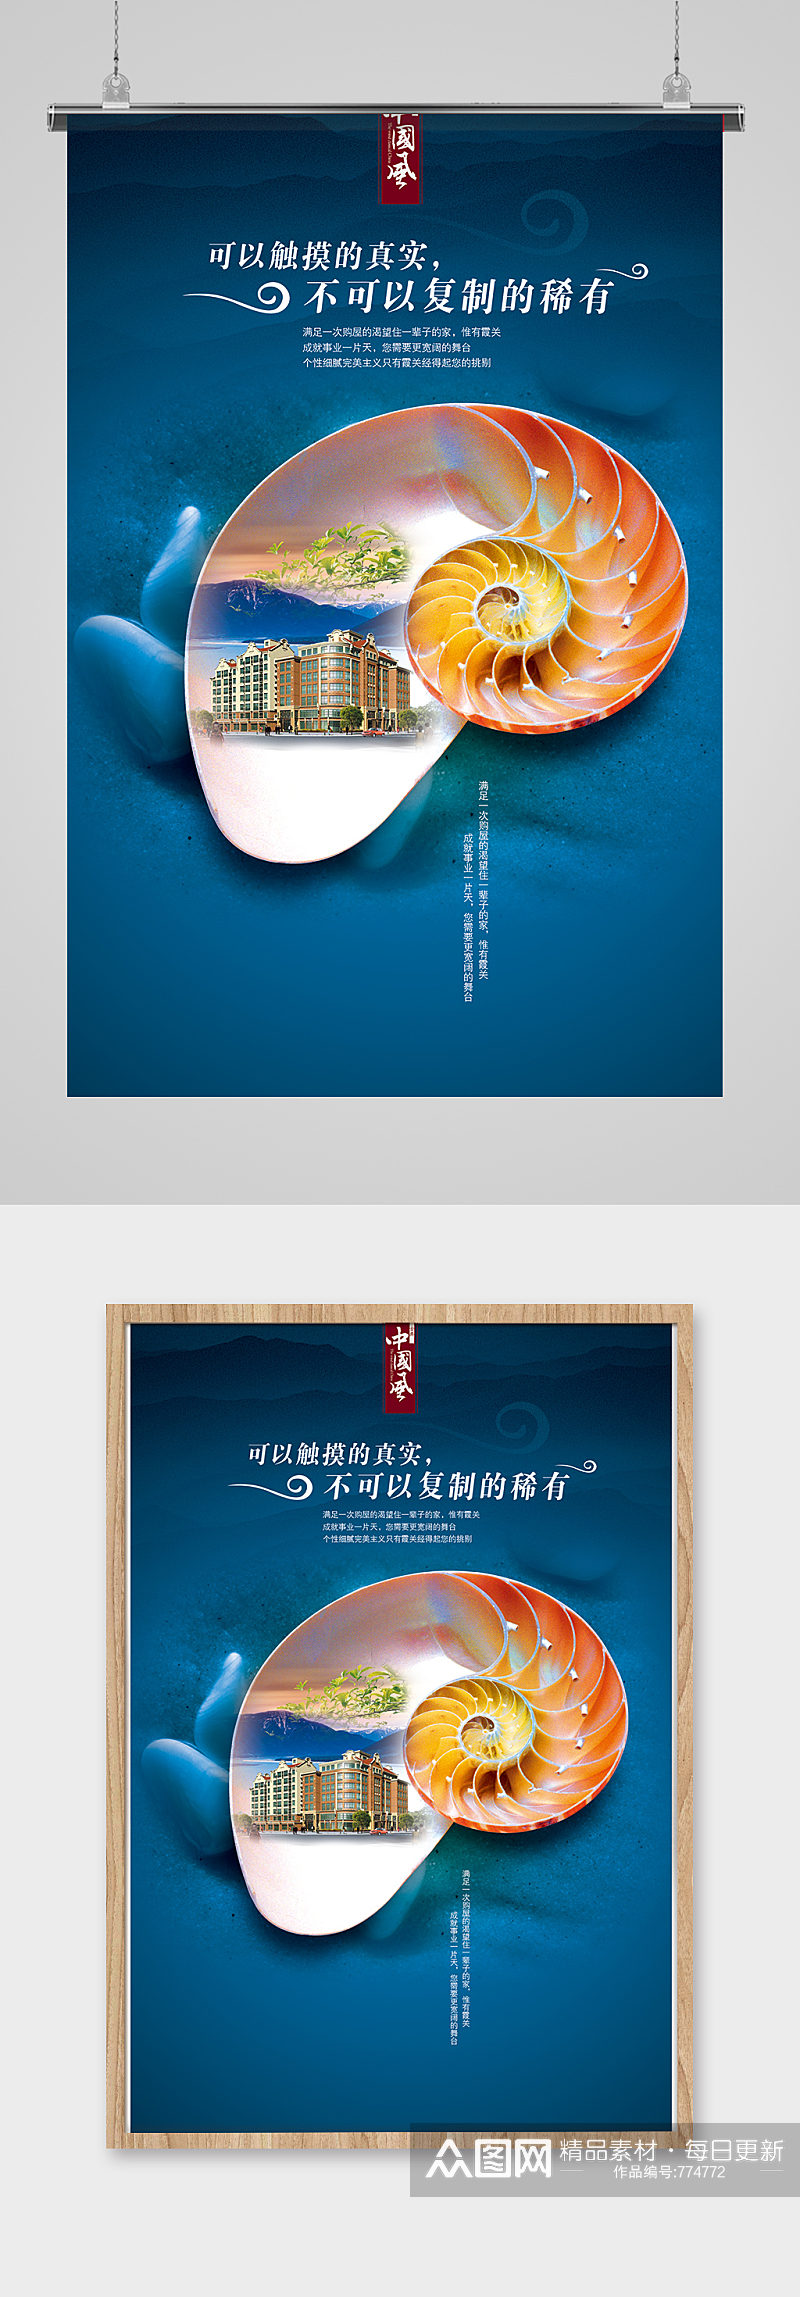 简约中国风房地产海报设计素材